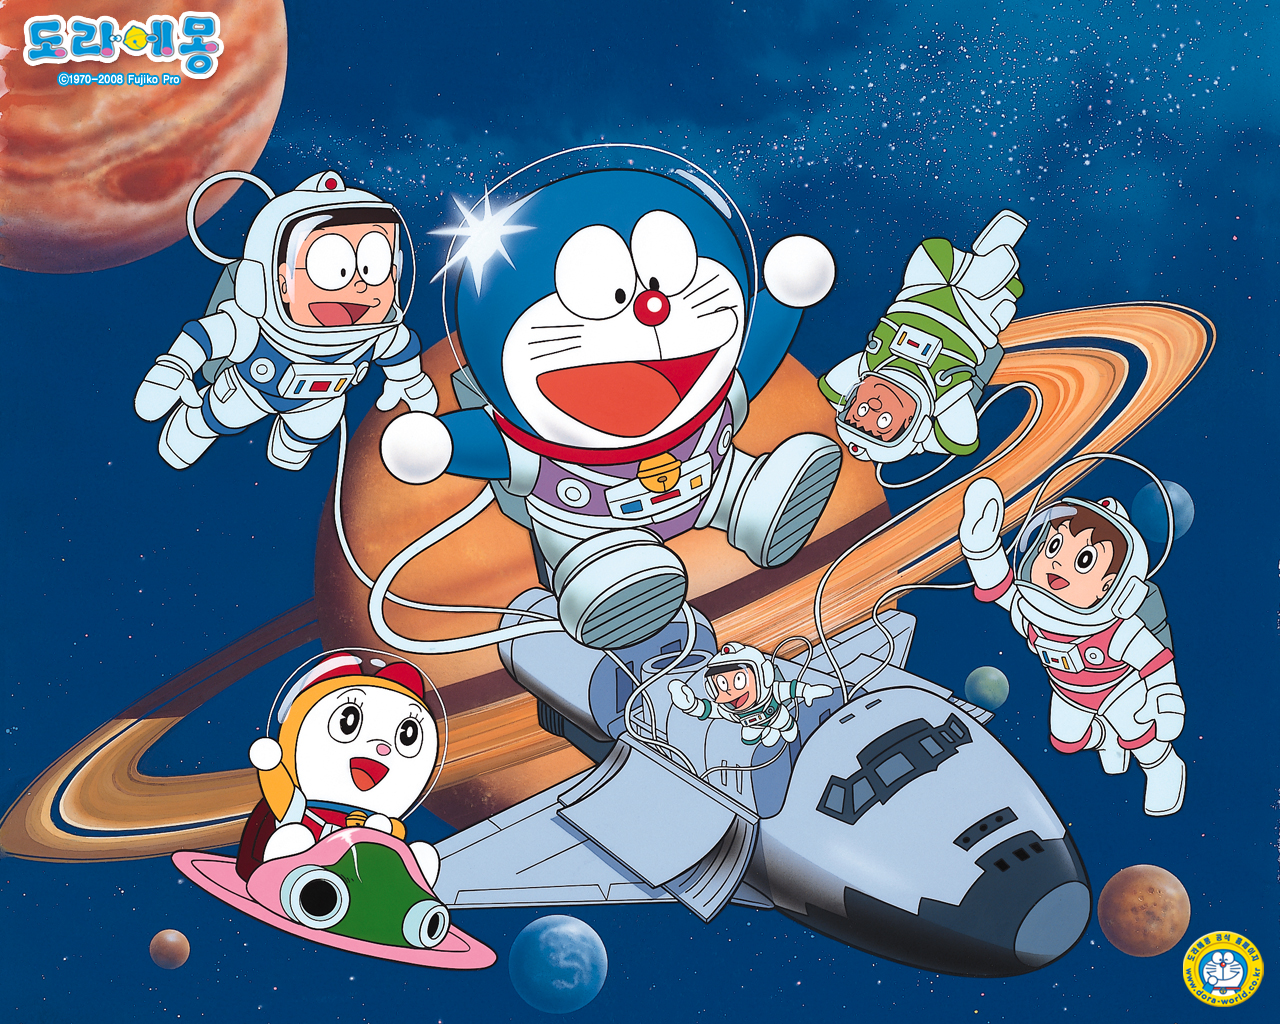 Hãy tìm hiểu về những hình ảnh Doraemon Anime trong bộ sưu tập này và rải lại những kỷ niệm tuổi thơ tuyệt vời của bạn. Được biết đến với những câu chuyện thú vị và nhân vật đầy sáng tạo, Doraemon chắc chắn sẽ làm cho bạn vô cùng thích thú!